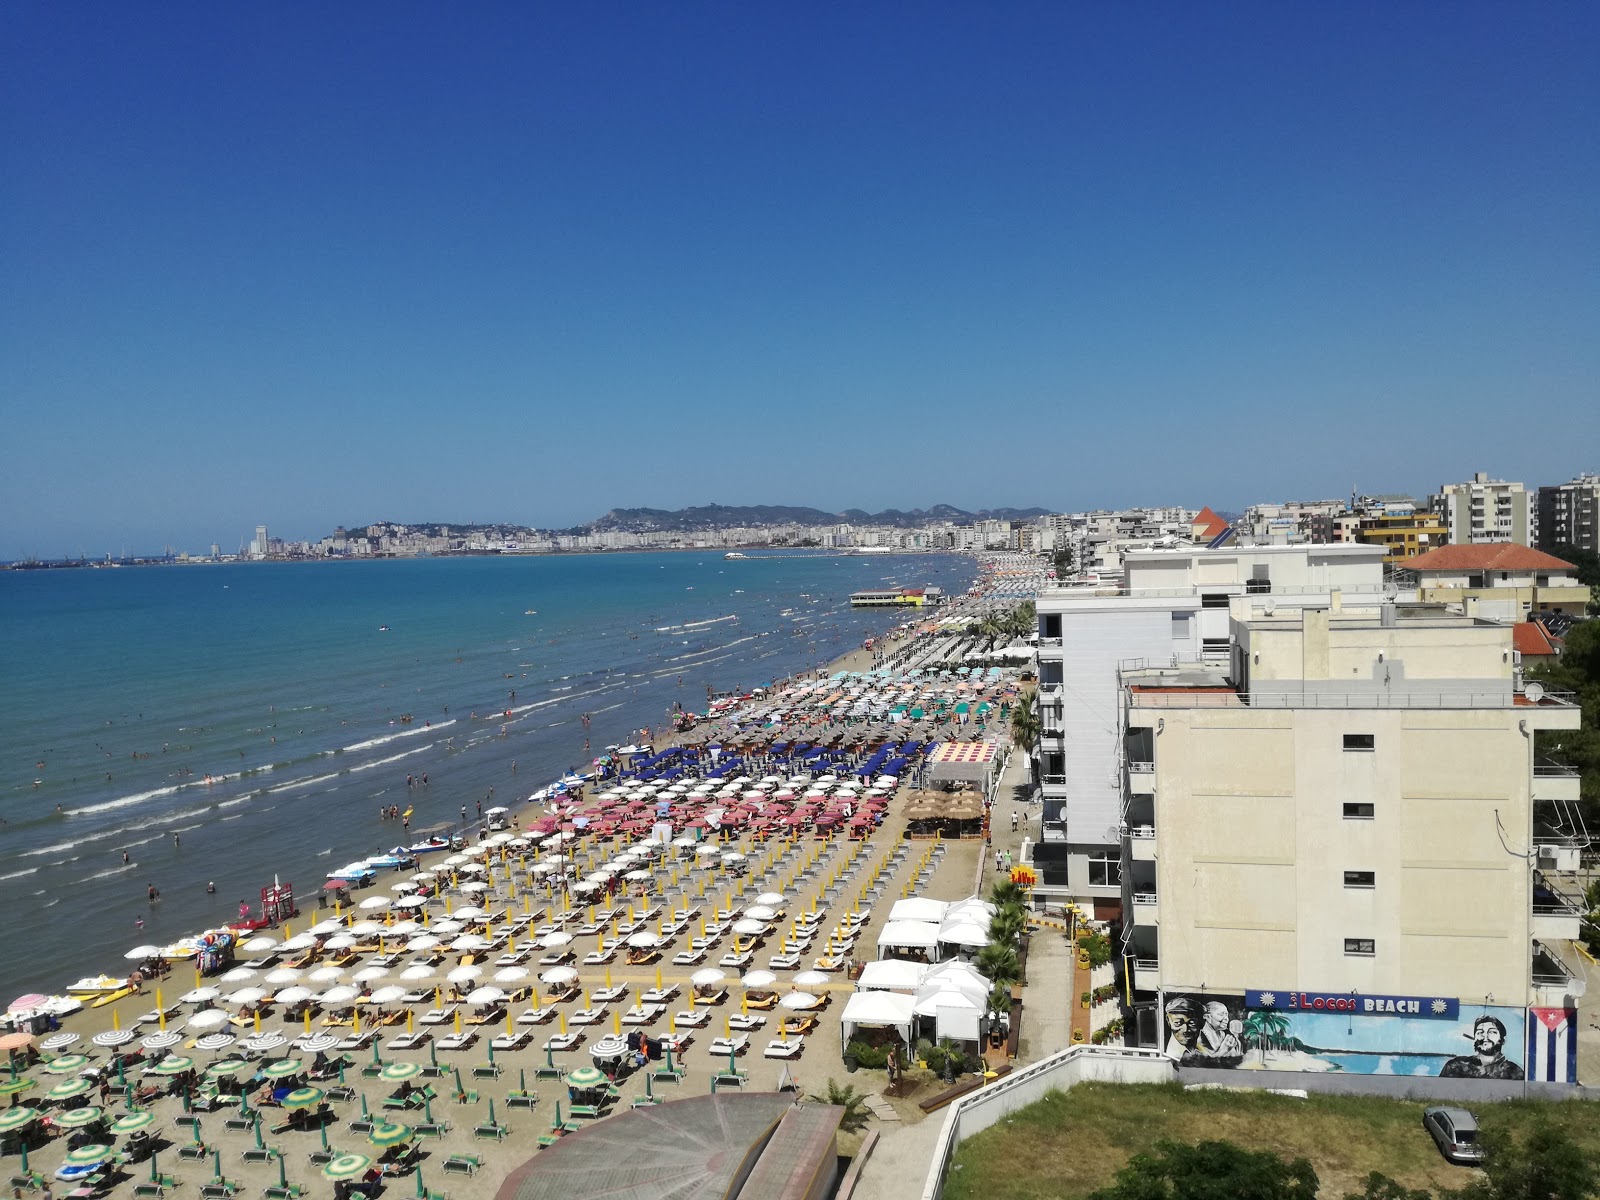 Zdjęcie Durres III beach z poziomem czystości głoska bezdźwięczna